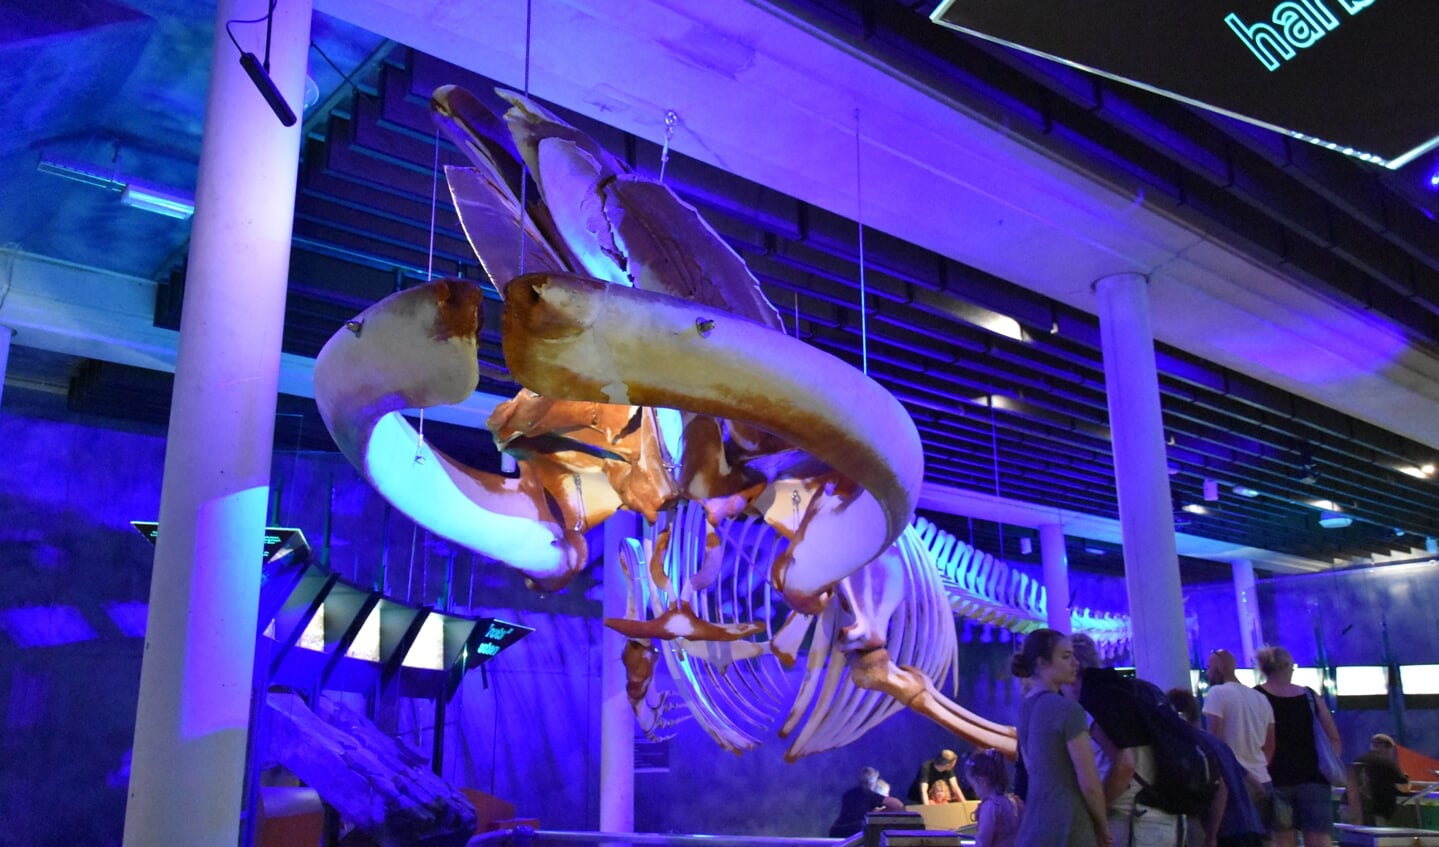 Eén van de laatste aanwinsten: het grootste skelet van Nederland is sinds mei te zien bij Ecomare